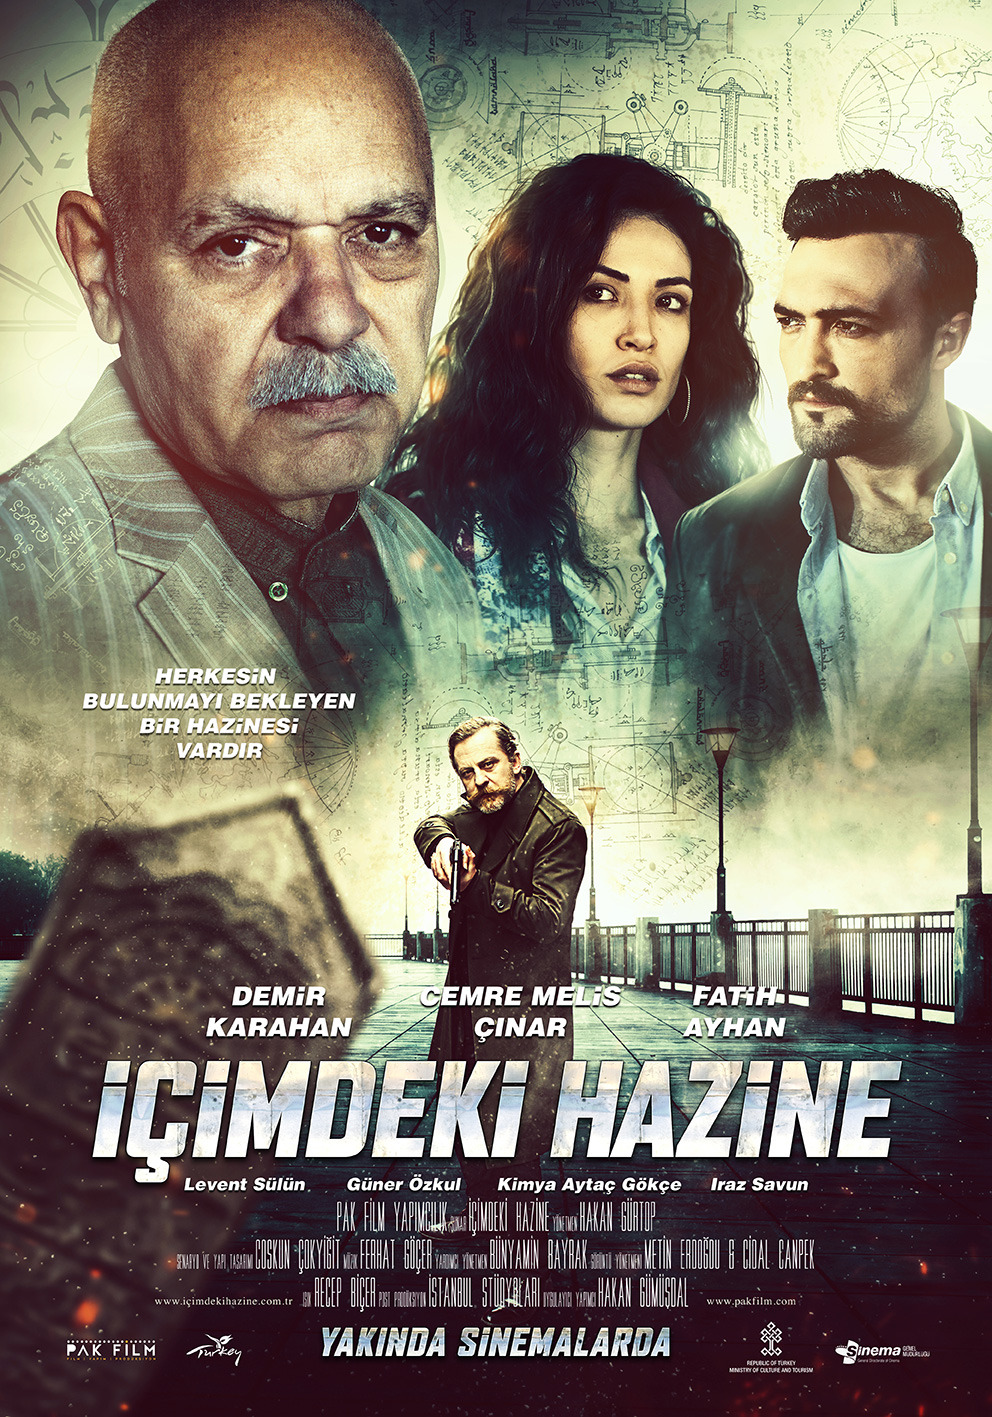 Extra Large Movie Poster Image for Icimdeki Hazine (#2 of 2)